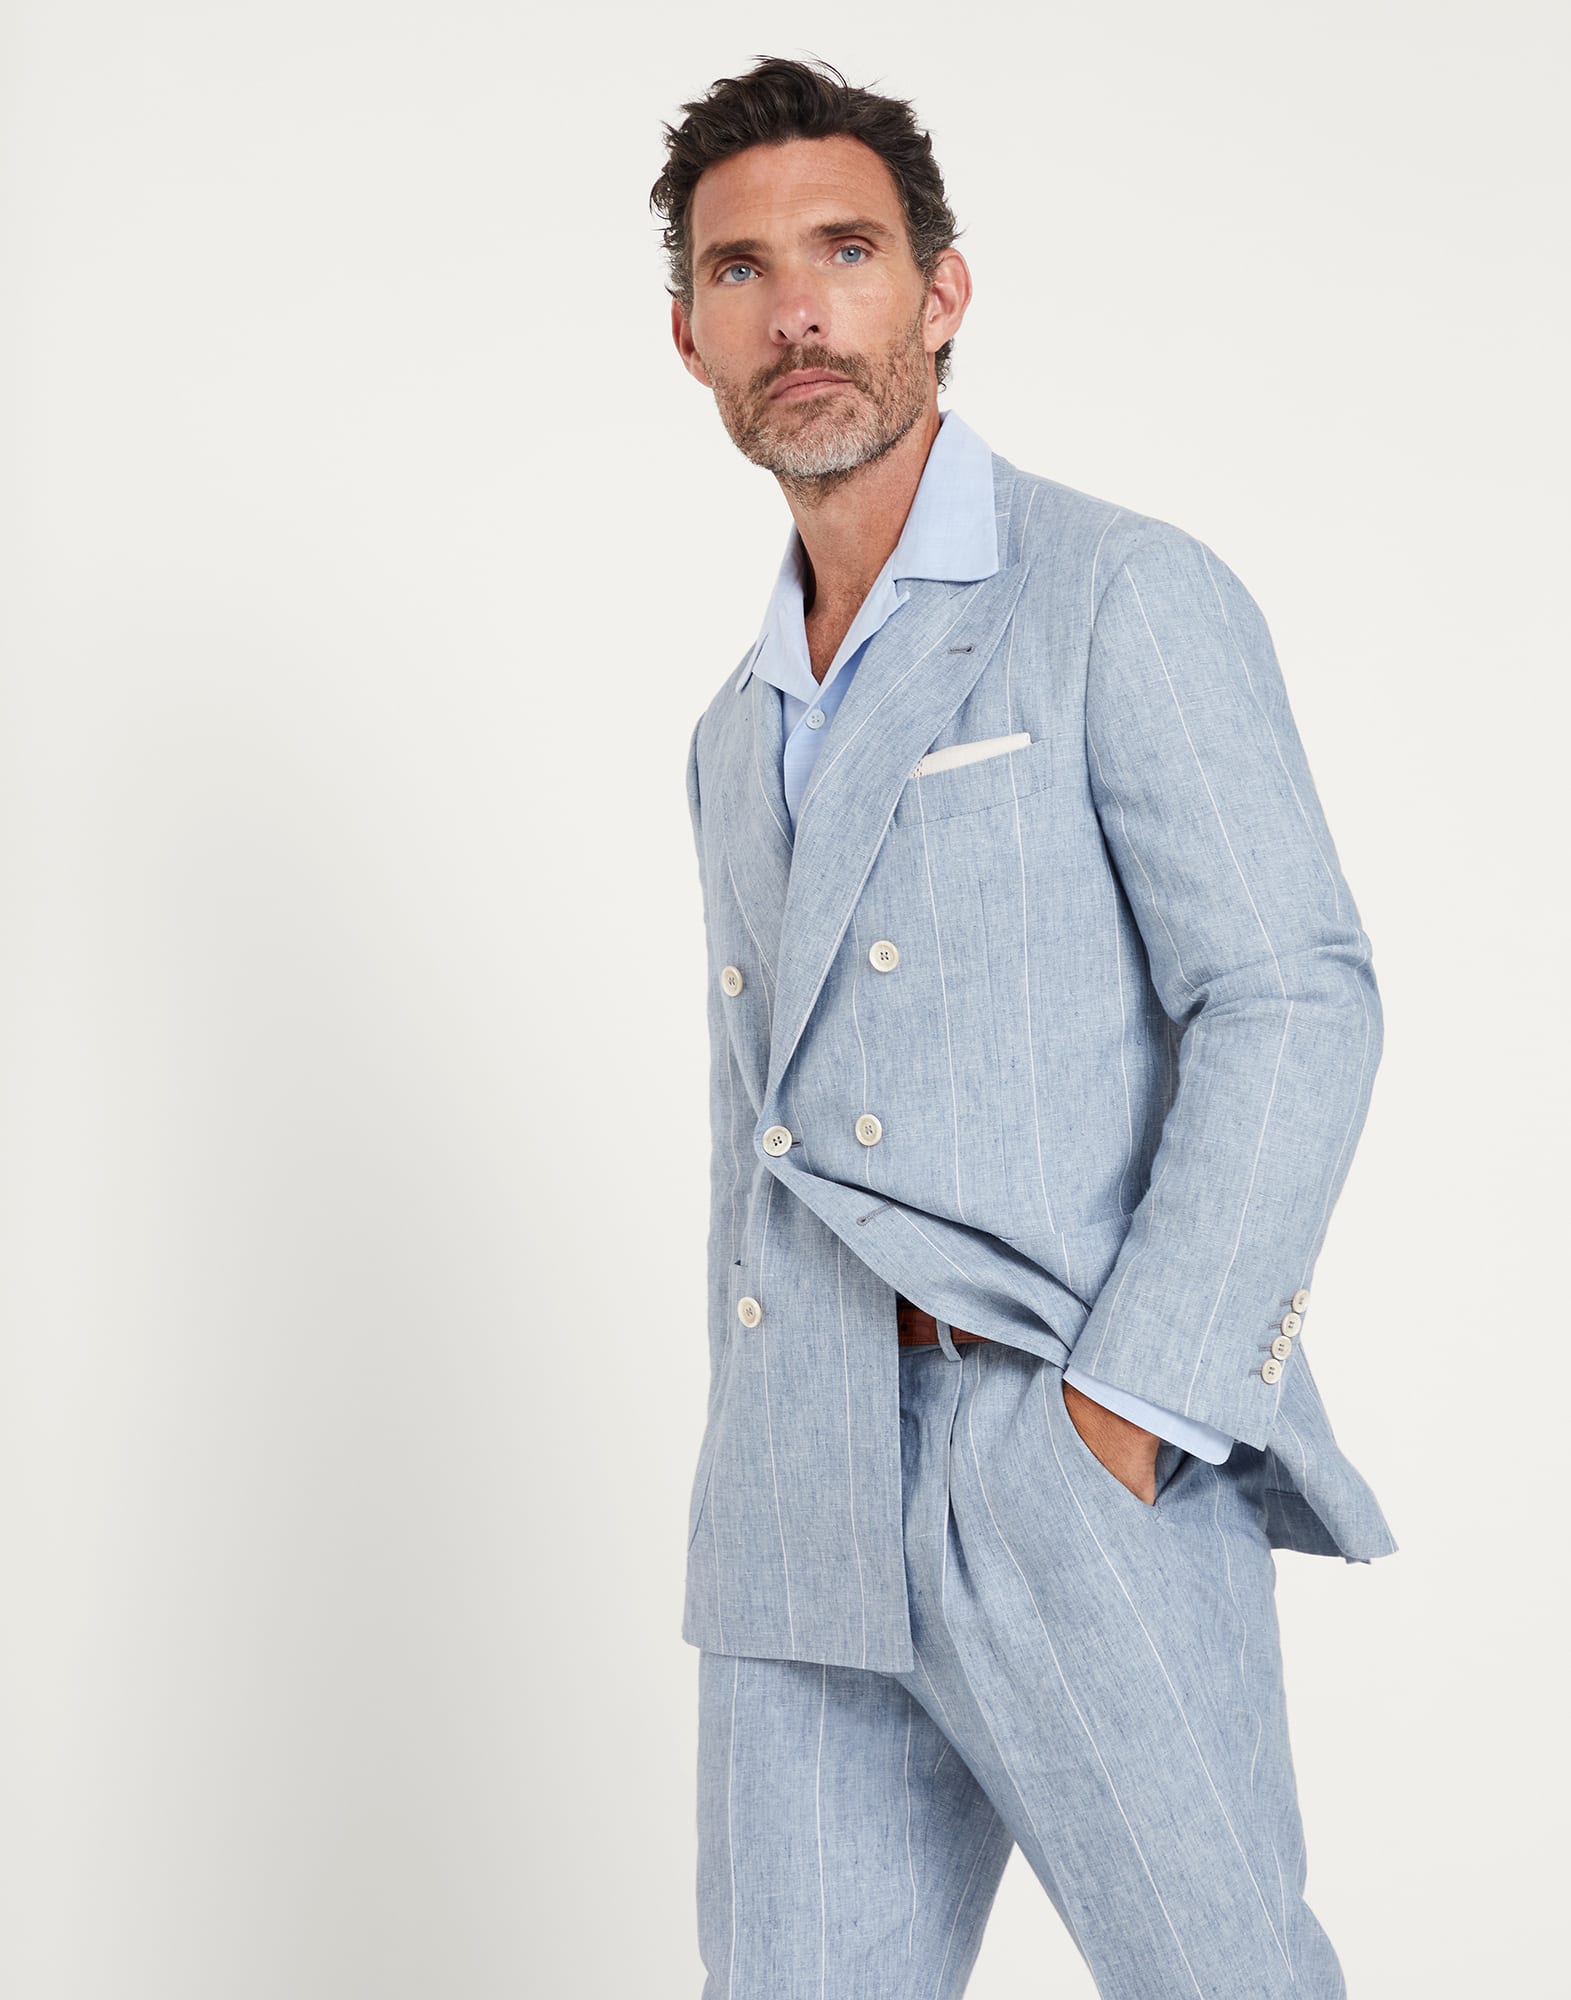 Бесподкладочный пиджак в меловую полоску Небесно-голубой Мужчина -
                        Brunello Cucinelli
                    